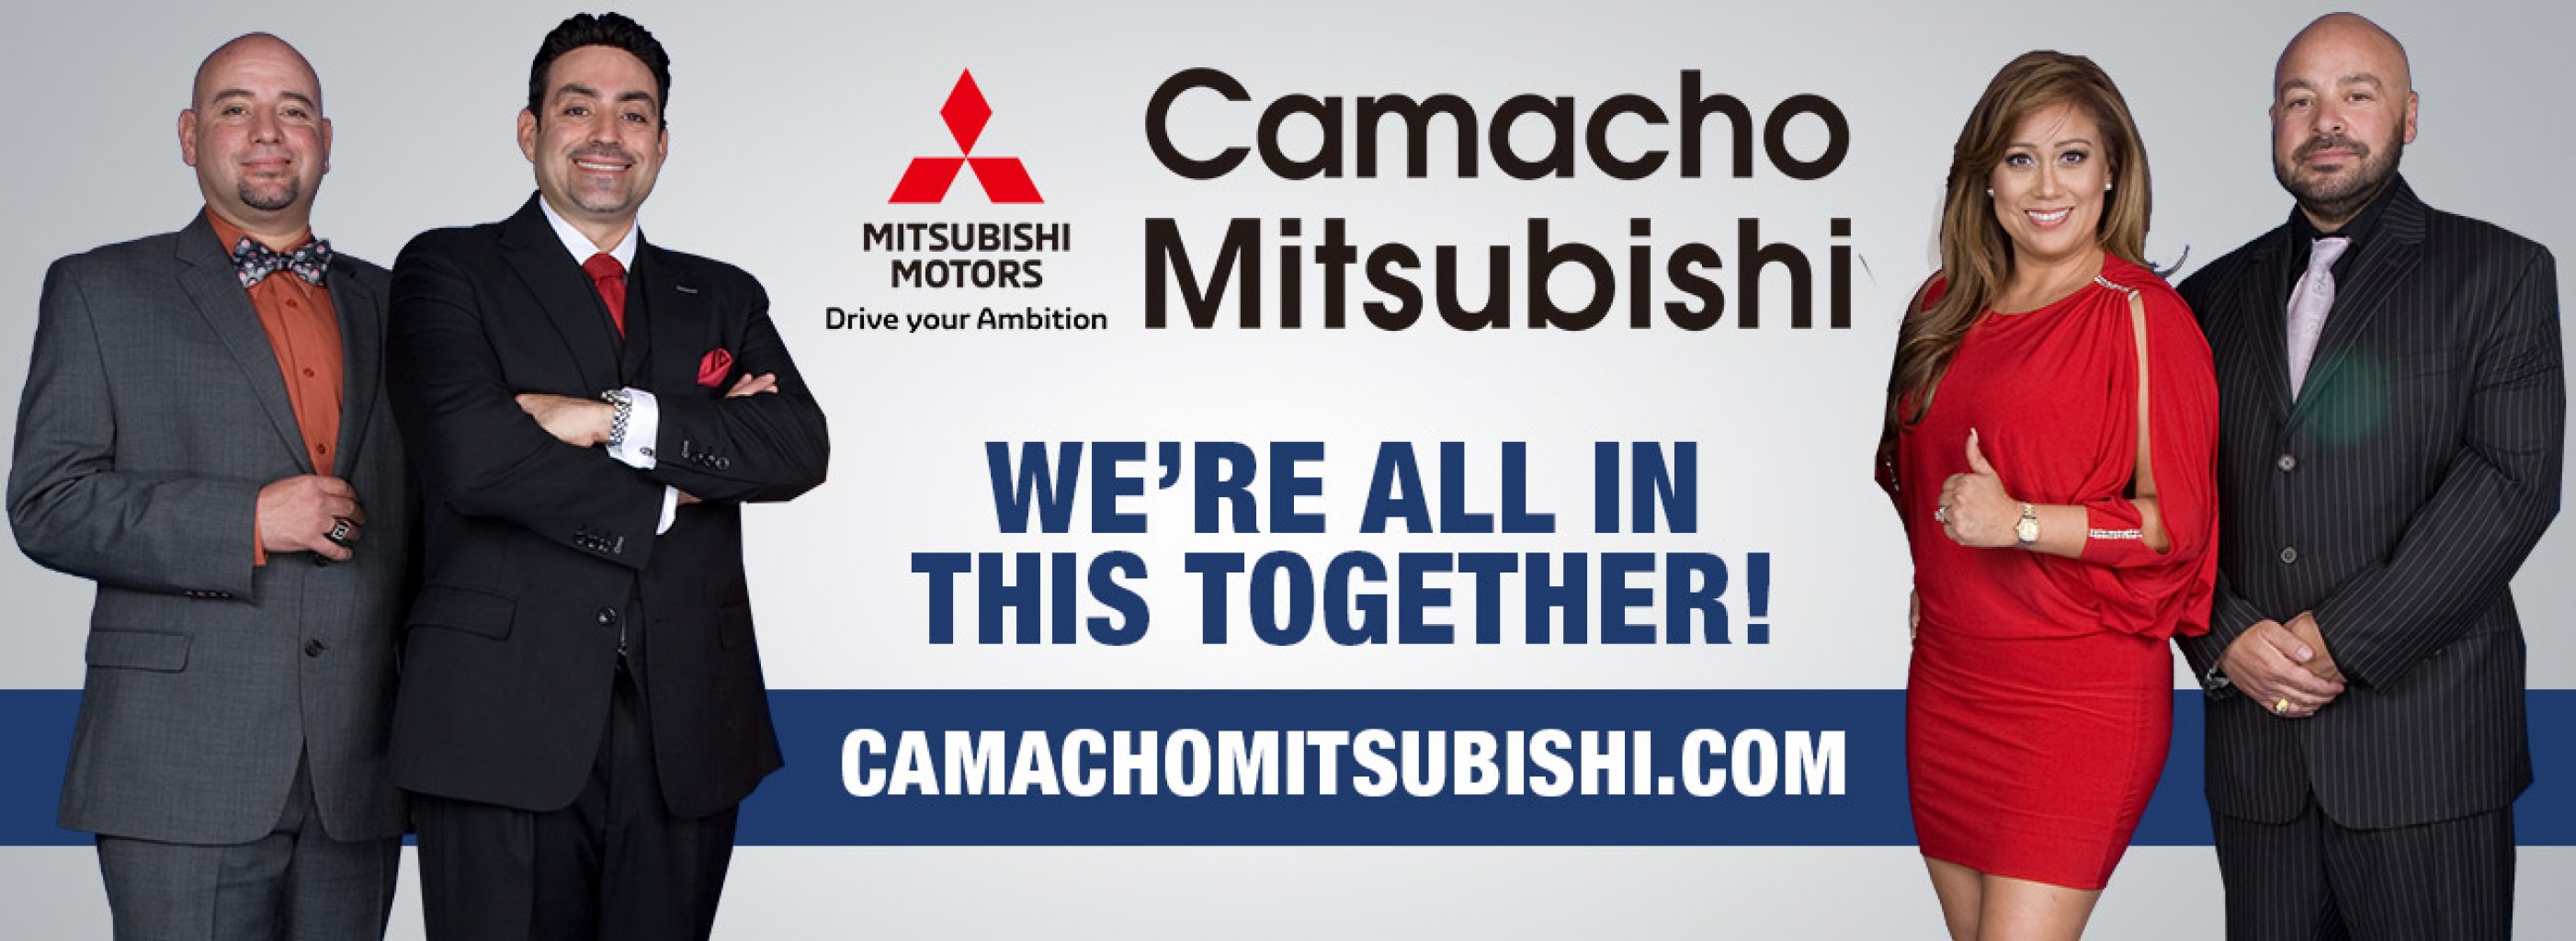 Mitsubishi y sus distribuidores hispanos, conozcan a Gustavo “GUS” Camacho